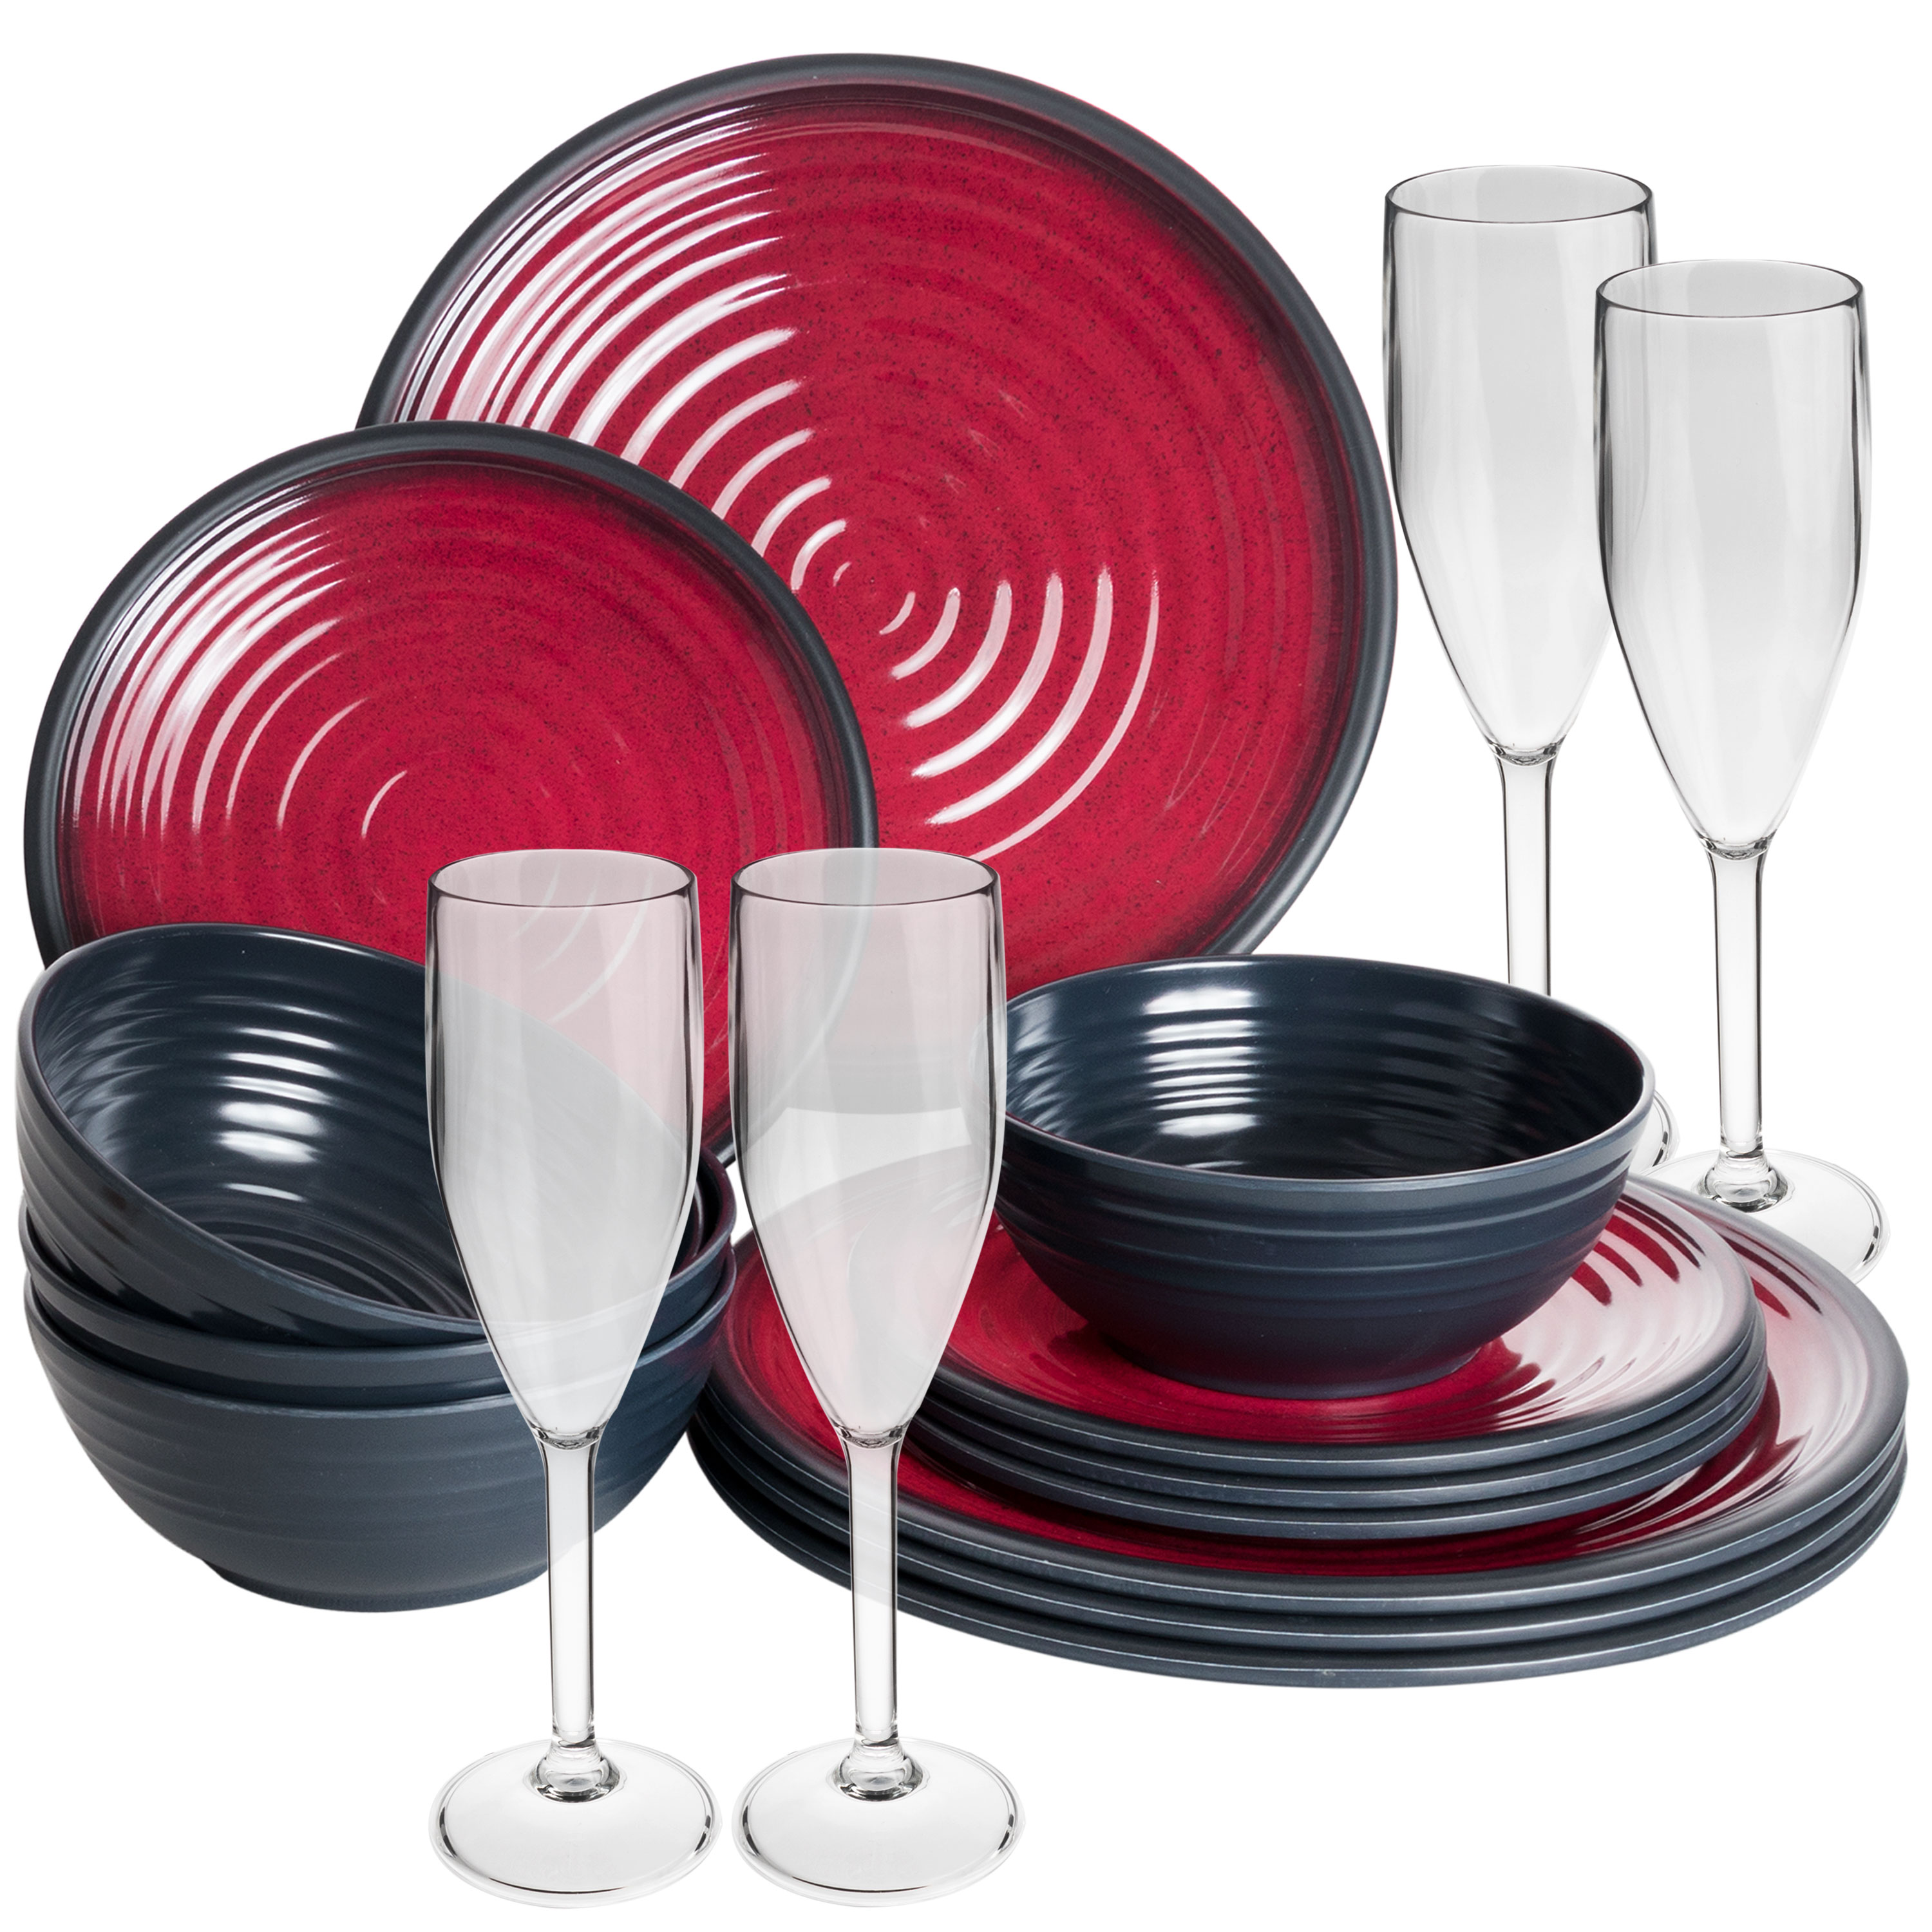 Melamin Camping Geschirr Set mit Tassen oder Gläsern Essgeschirr rot  schwarz | eBay